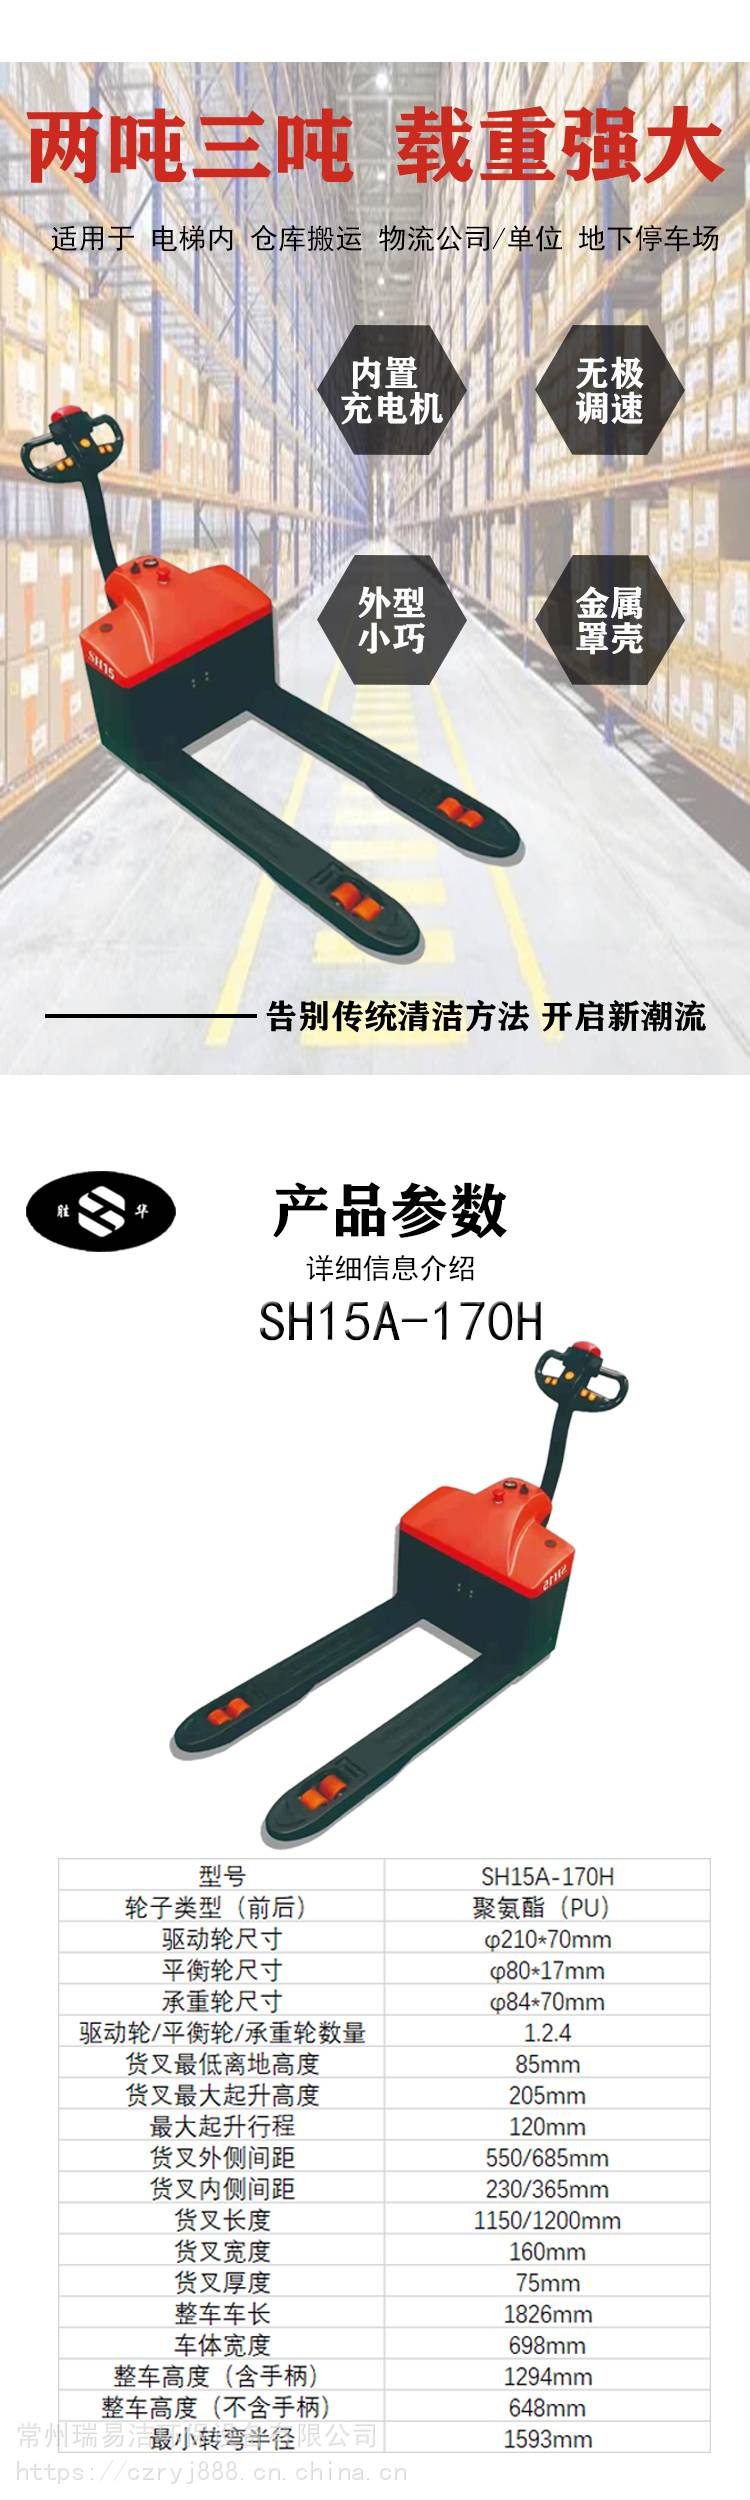 胜华SH-2100AA电动四轮驾驶式扫地车吸尘洒水一体化设计